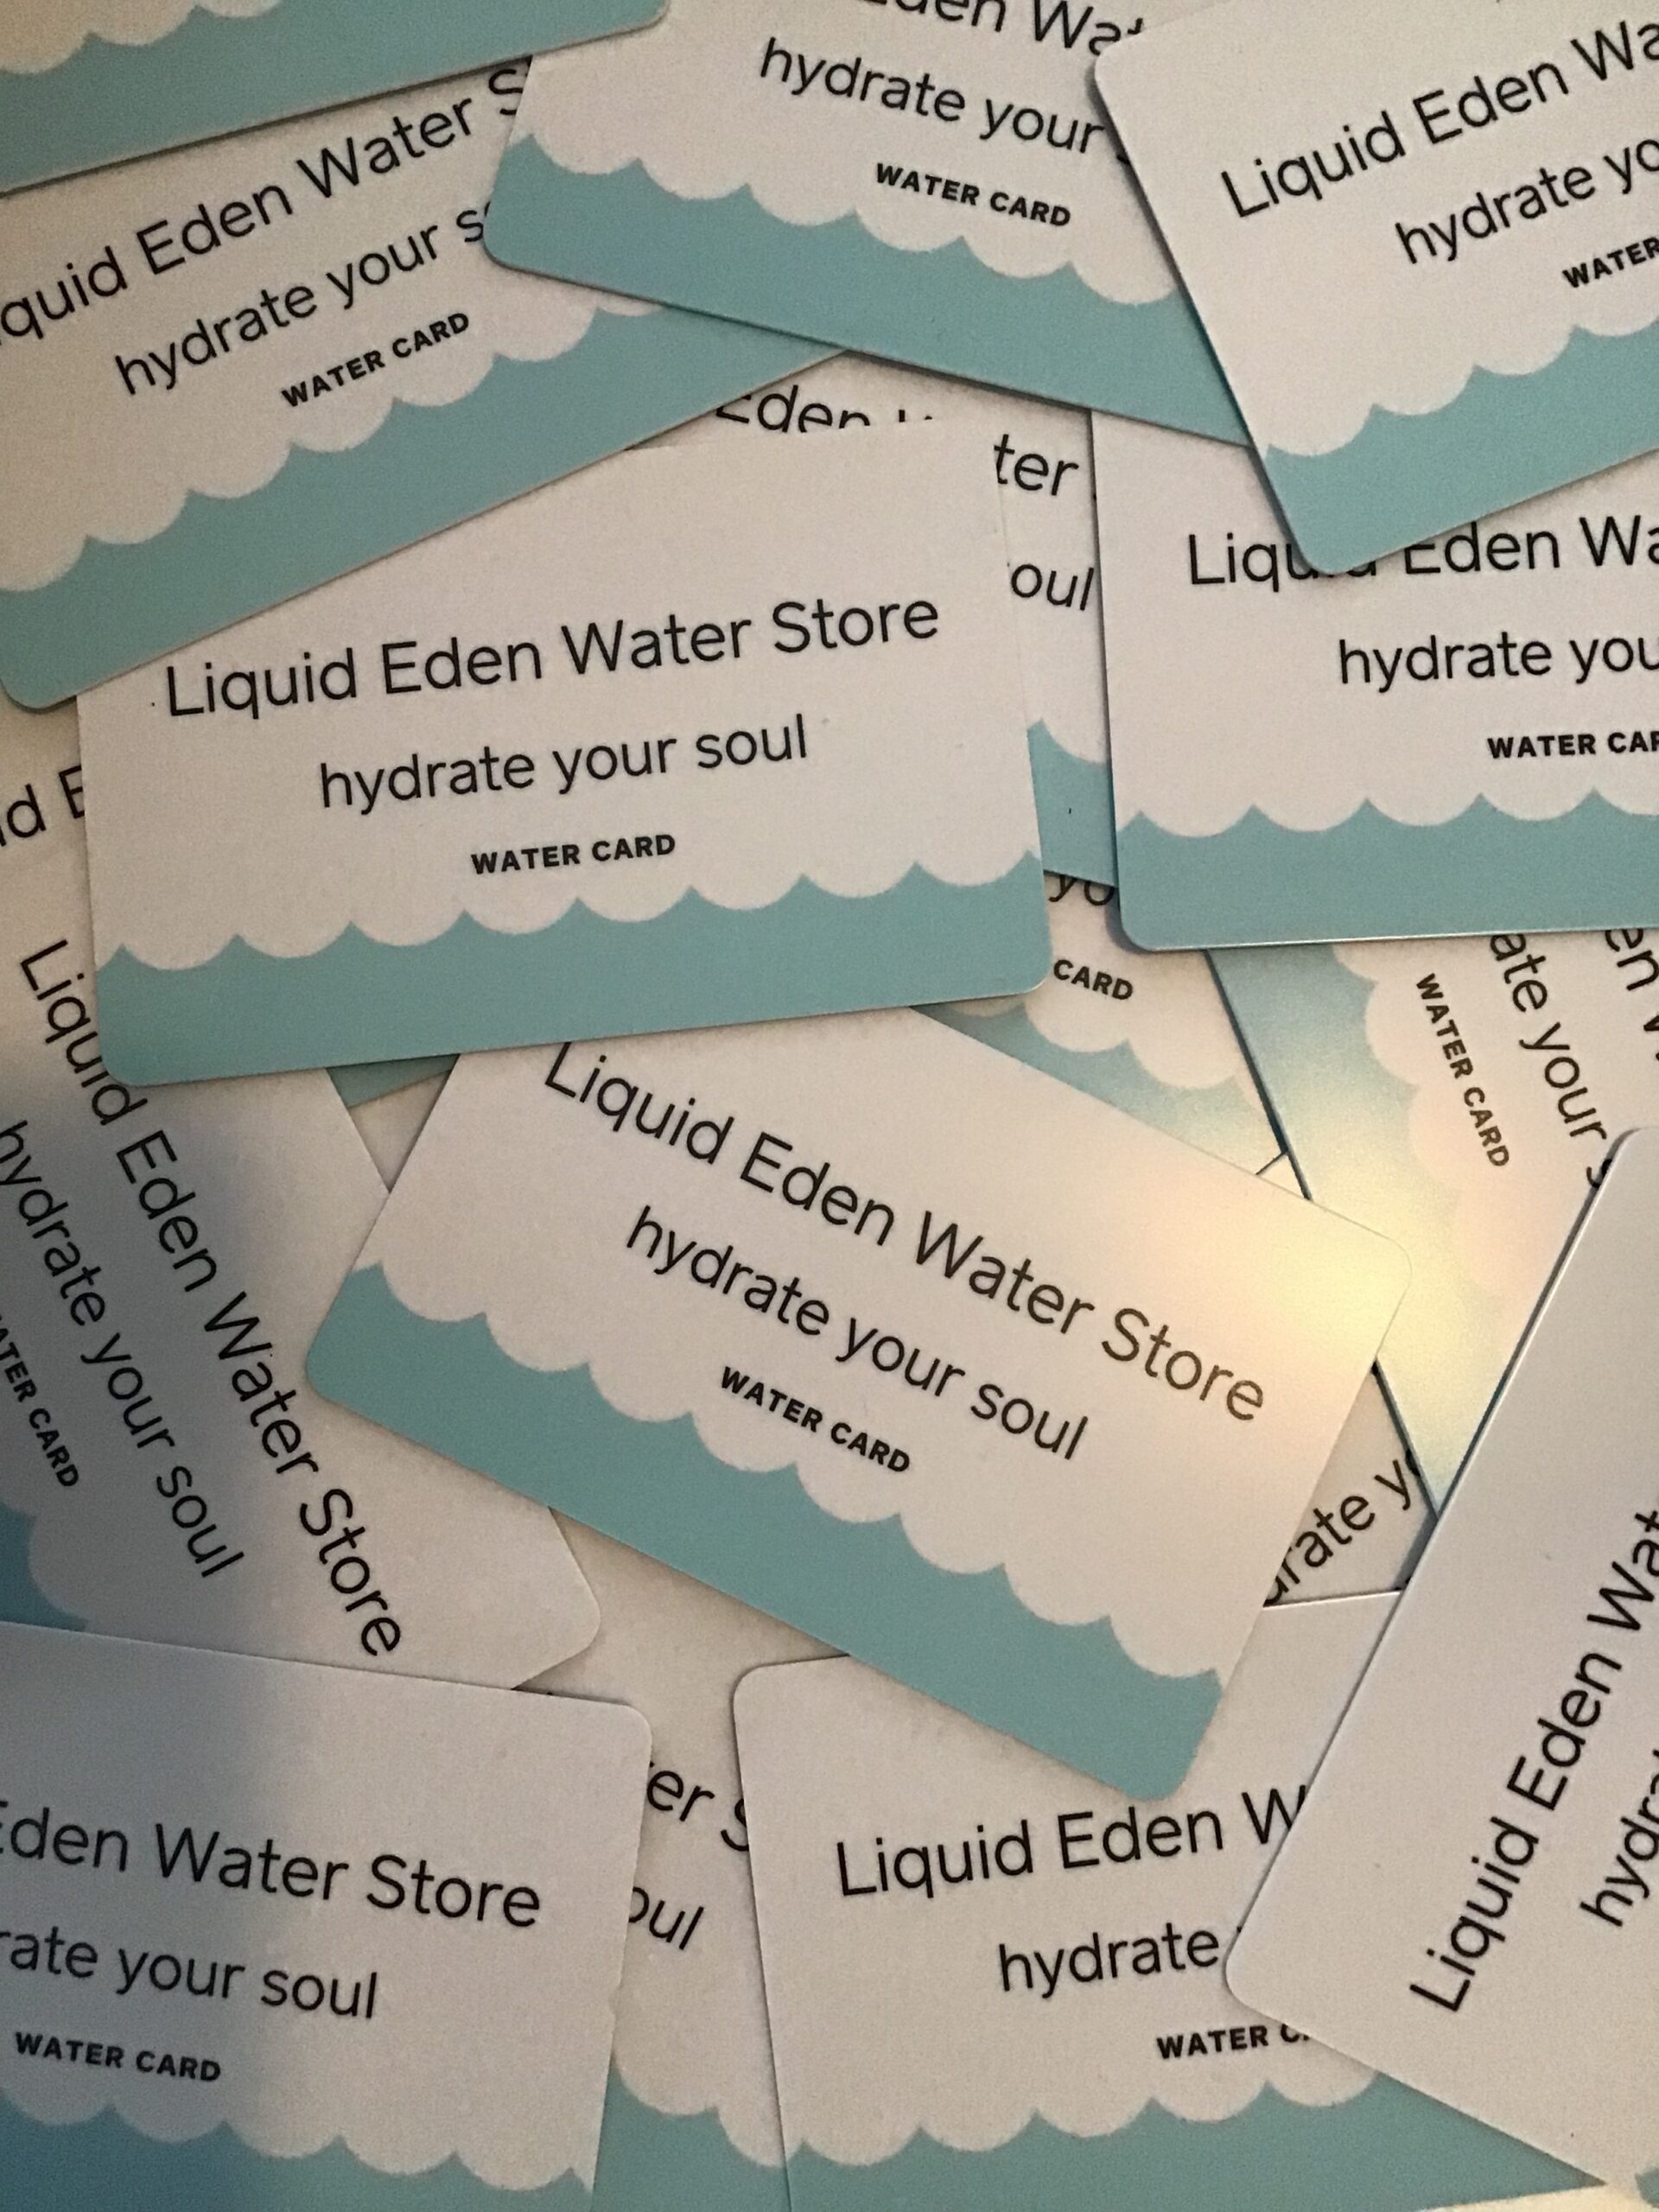 Water Card Liquid Eden Water Store 2991